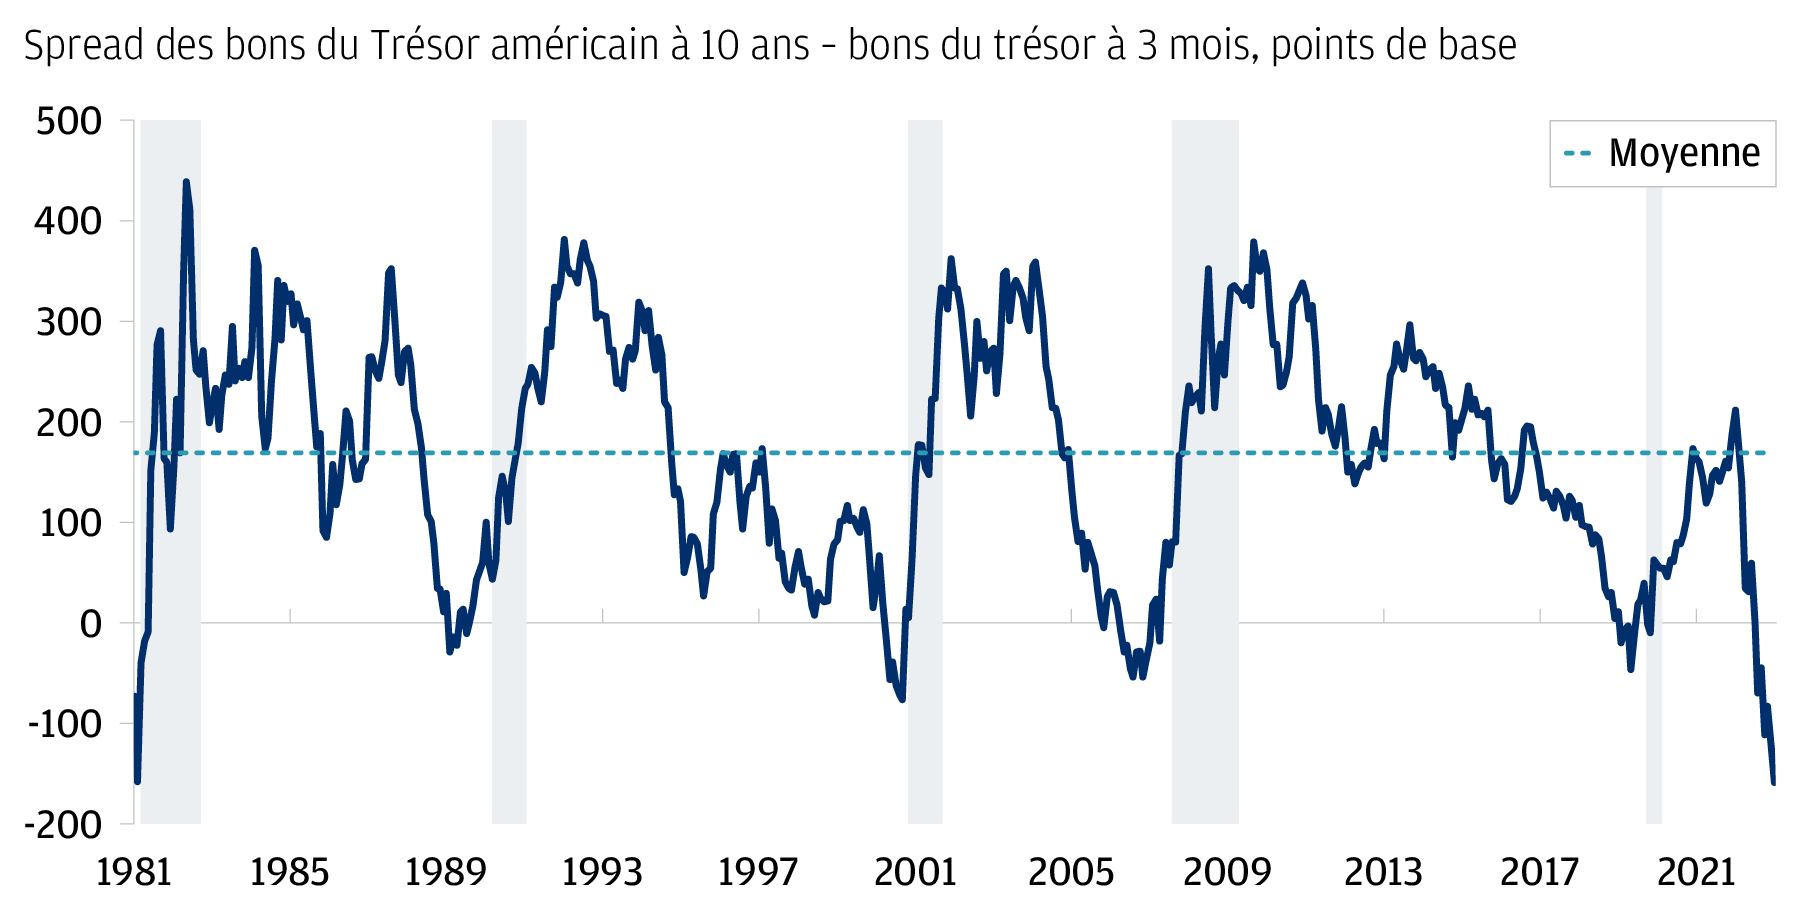 Graphique linéaire de la courbe de rendement des obligations d'État américaines (définie comme l'écart de rendement entre les obligations du Trésor américain à 10 ans et les bons du Trésor à 3 mois), indiquée en points de base sur l'axe des ordonnées et représentée par des points de données mensuelles depuis 1981 jusqu'à avril 2023 sur l'axe des abscisses. En avril 2023, la courbe des rendements affiche une importante inversion de -160 points de base, un niveau inédit depuis 1981. La ligne en pointillé indique une valeur moyenne de 168 points de base sur la période présentée. Des inversions ont également été observées en 1981 (inversion de -160 points de base), 1989 (-30 points de base), 2000 (-78 points de base), 2007 (-56 points de base) et 2019 (-48 points de base). Ces inversions antérieures ont été suivies par des récessions économiques telles que définies par le NBER, qui sont représentées par les zones grisées.